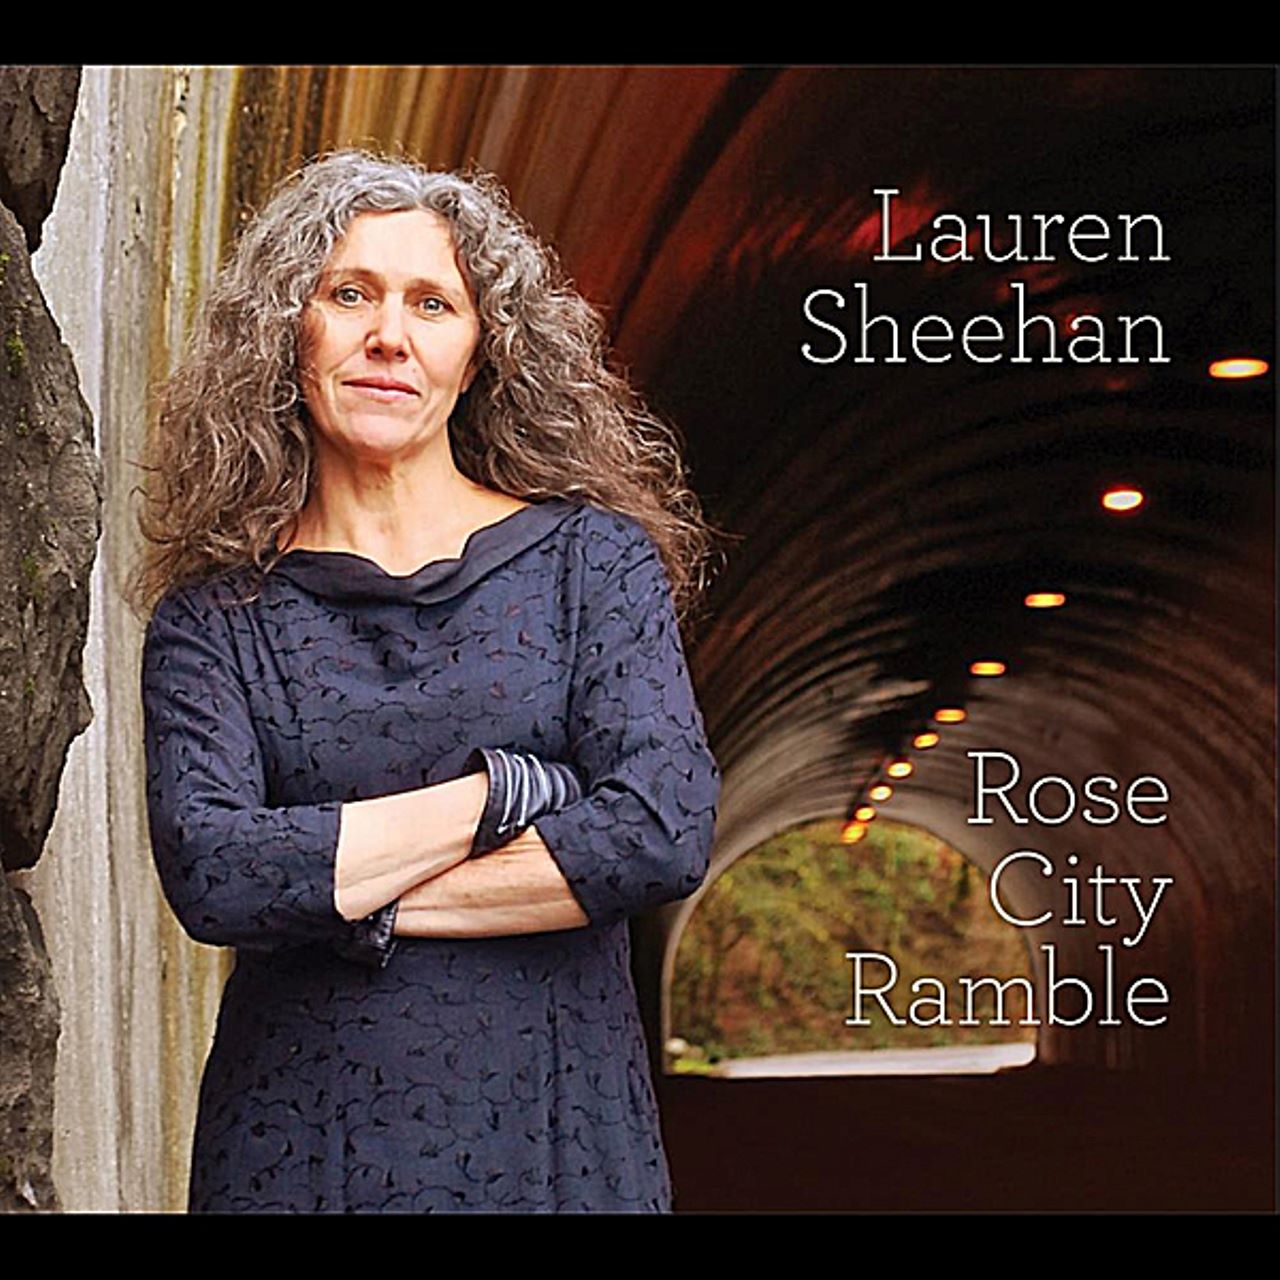 Lauren Sheehan - Rose City Ramble cover album